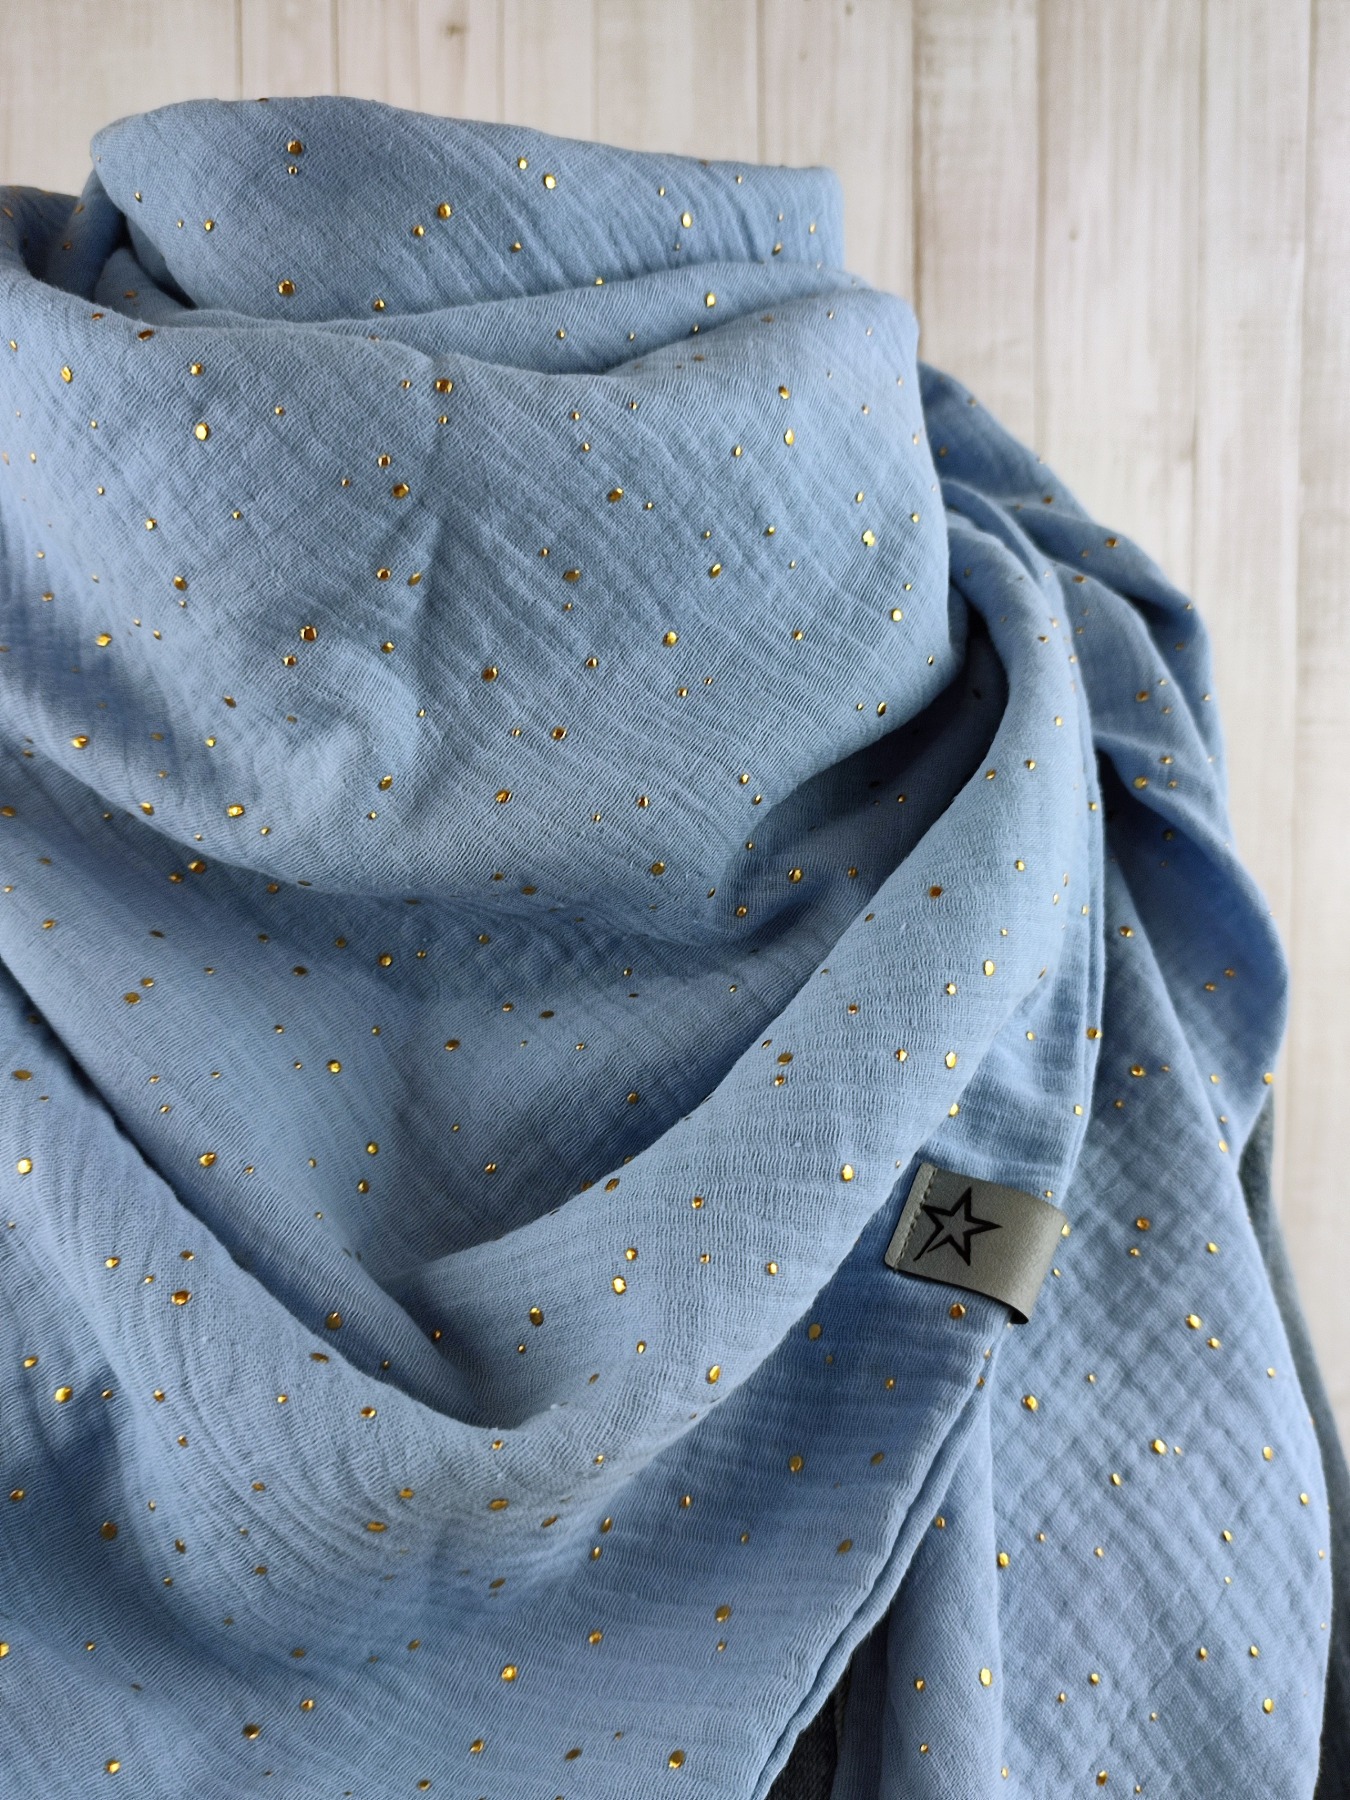 Tuch Dreieckstuch Musselin Damen Schal hellblau mit goldenen Punkten XXL Tuch aus Baumwolle Mamatuch